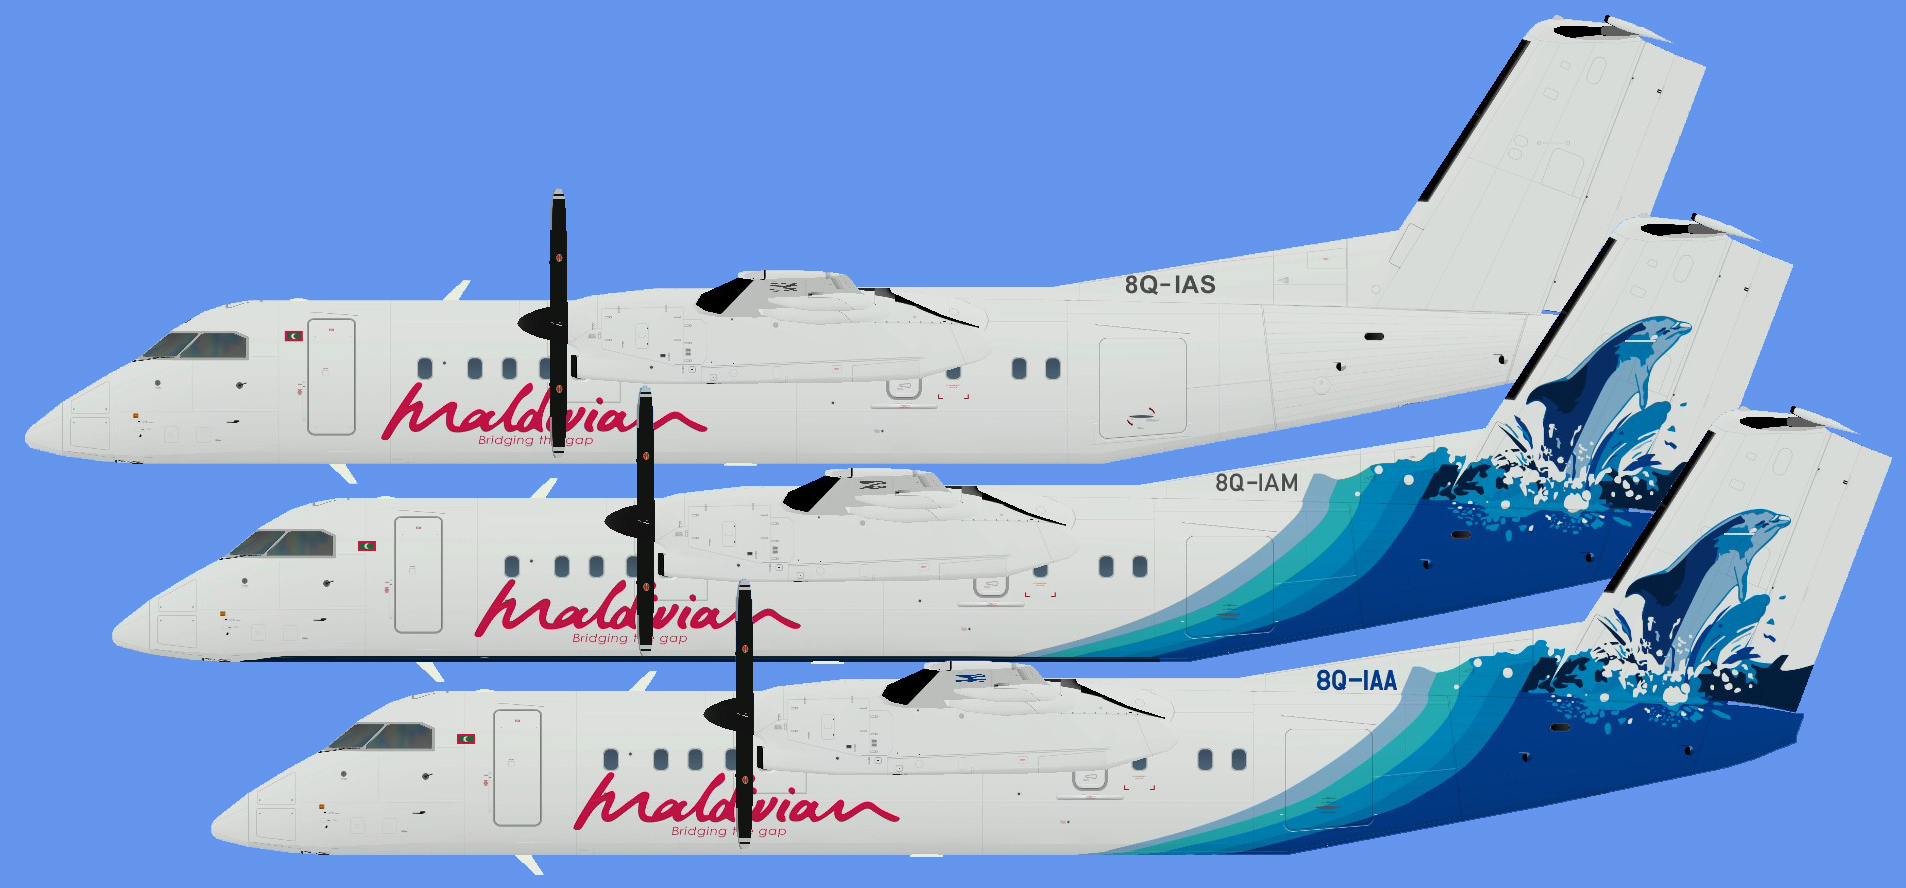 Maldivian Dash 8-300 (AIG)